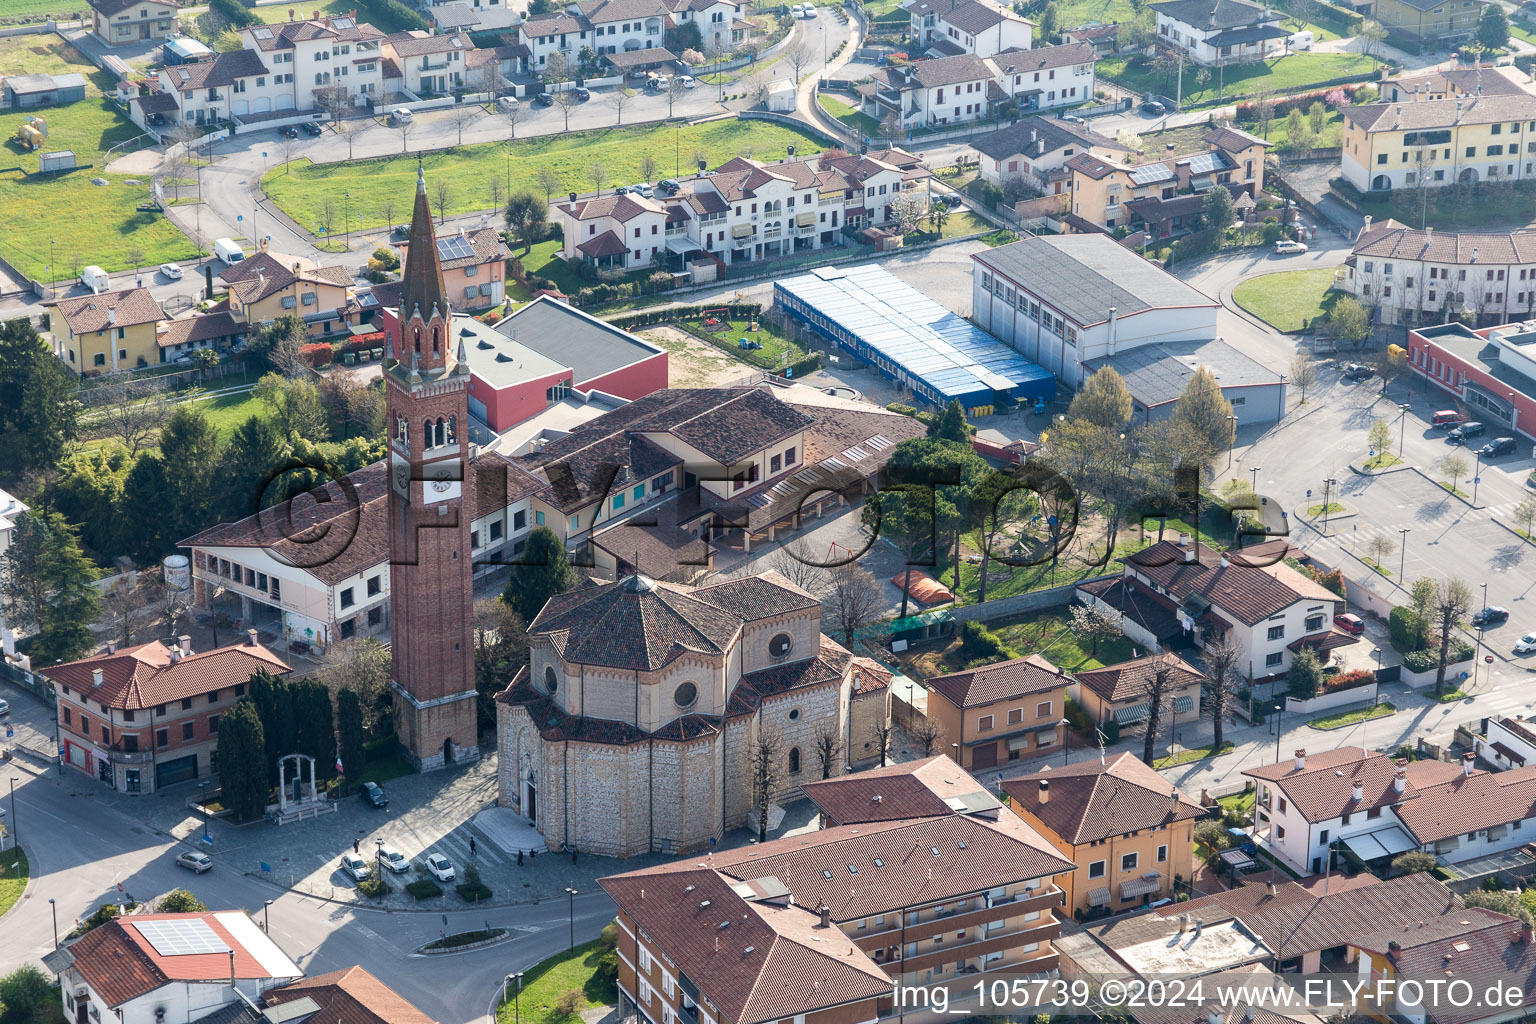 Church tower and tower roof at the church building of Chiesa delle Sante Perpetua e Felicita in Fiume Veneto in Friuli-Venezia Giulia, Italy